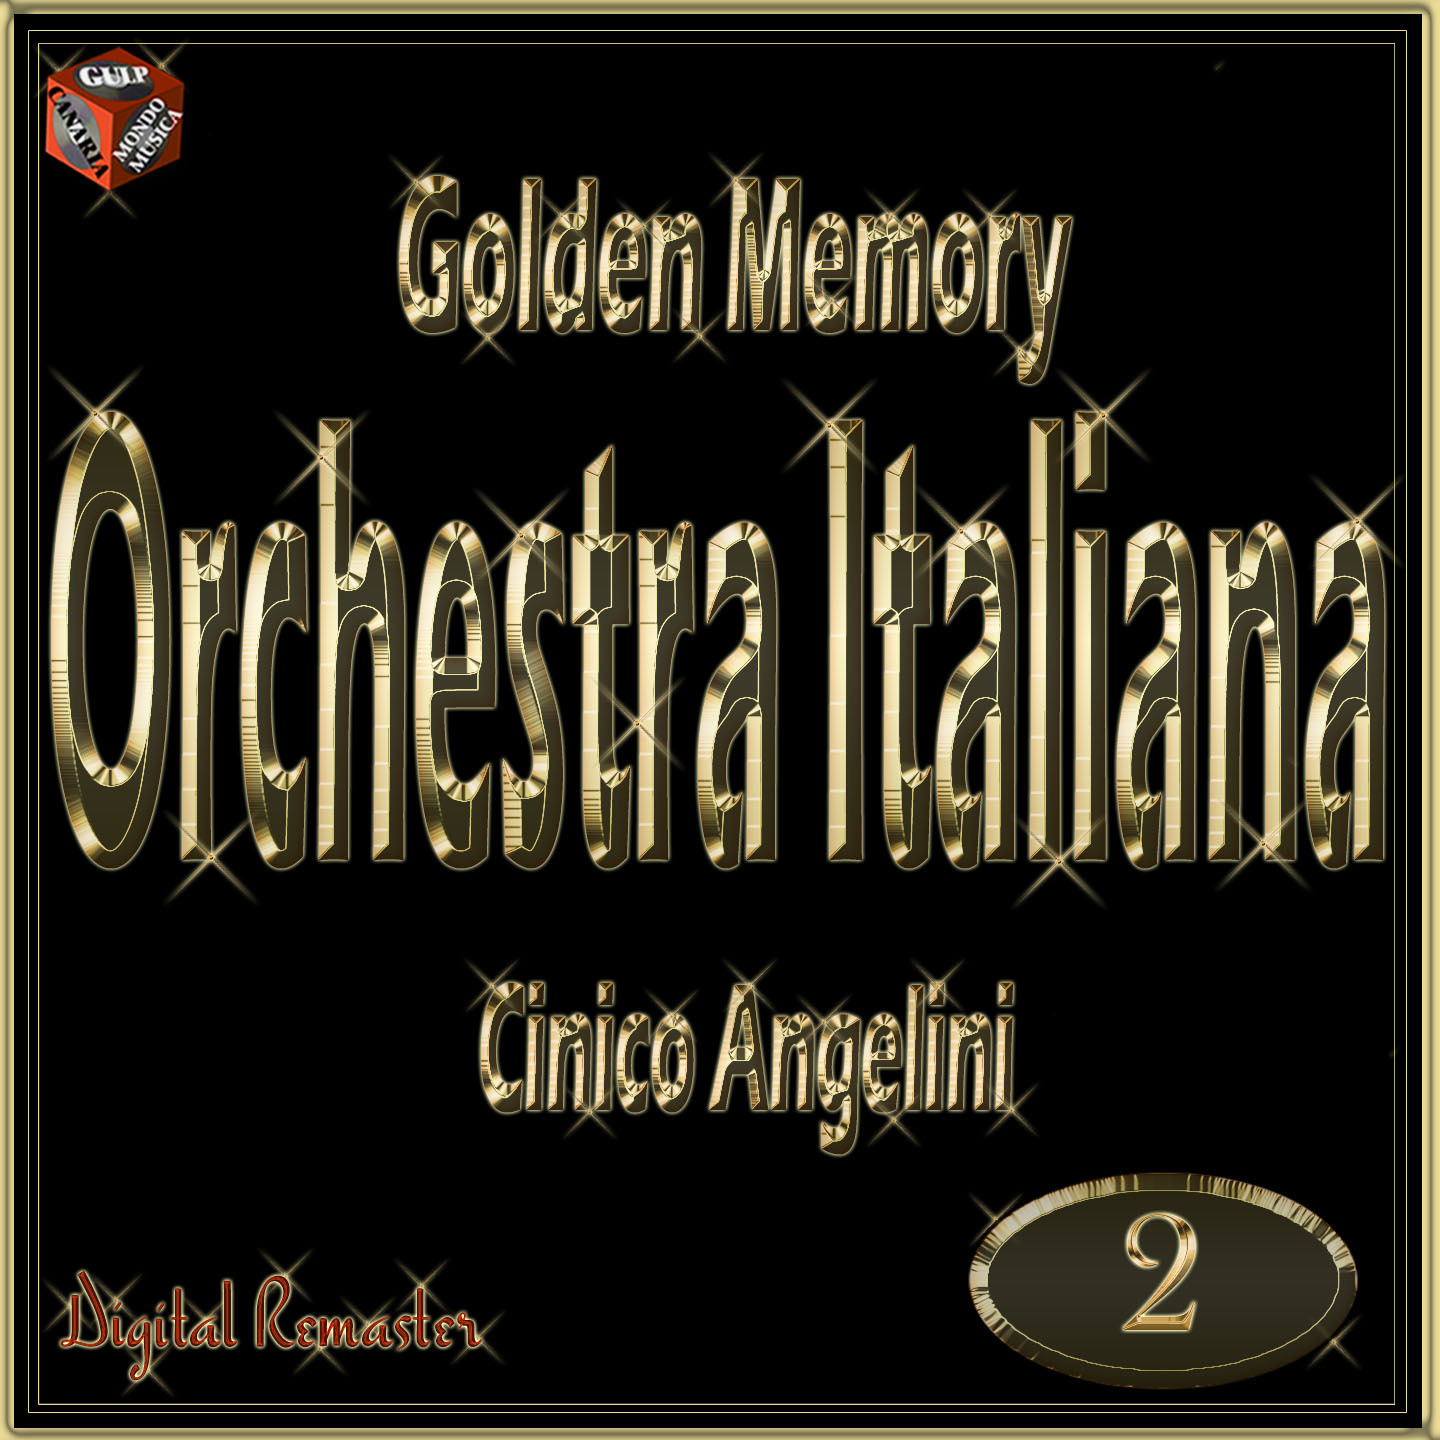 Golden Memory: Orchestra Italiana Cinico Angelini, vol. 2